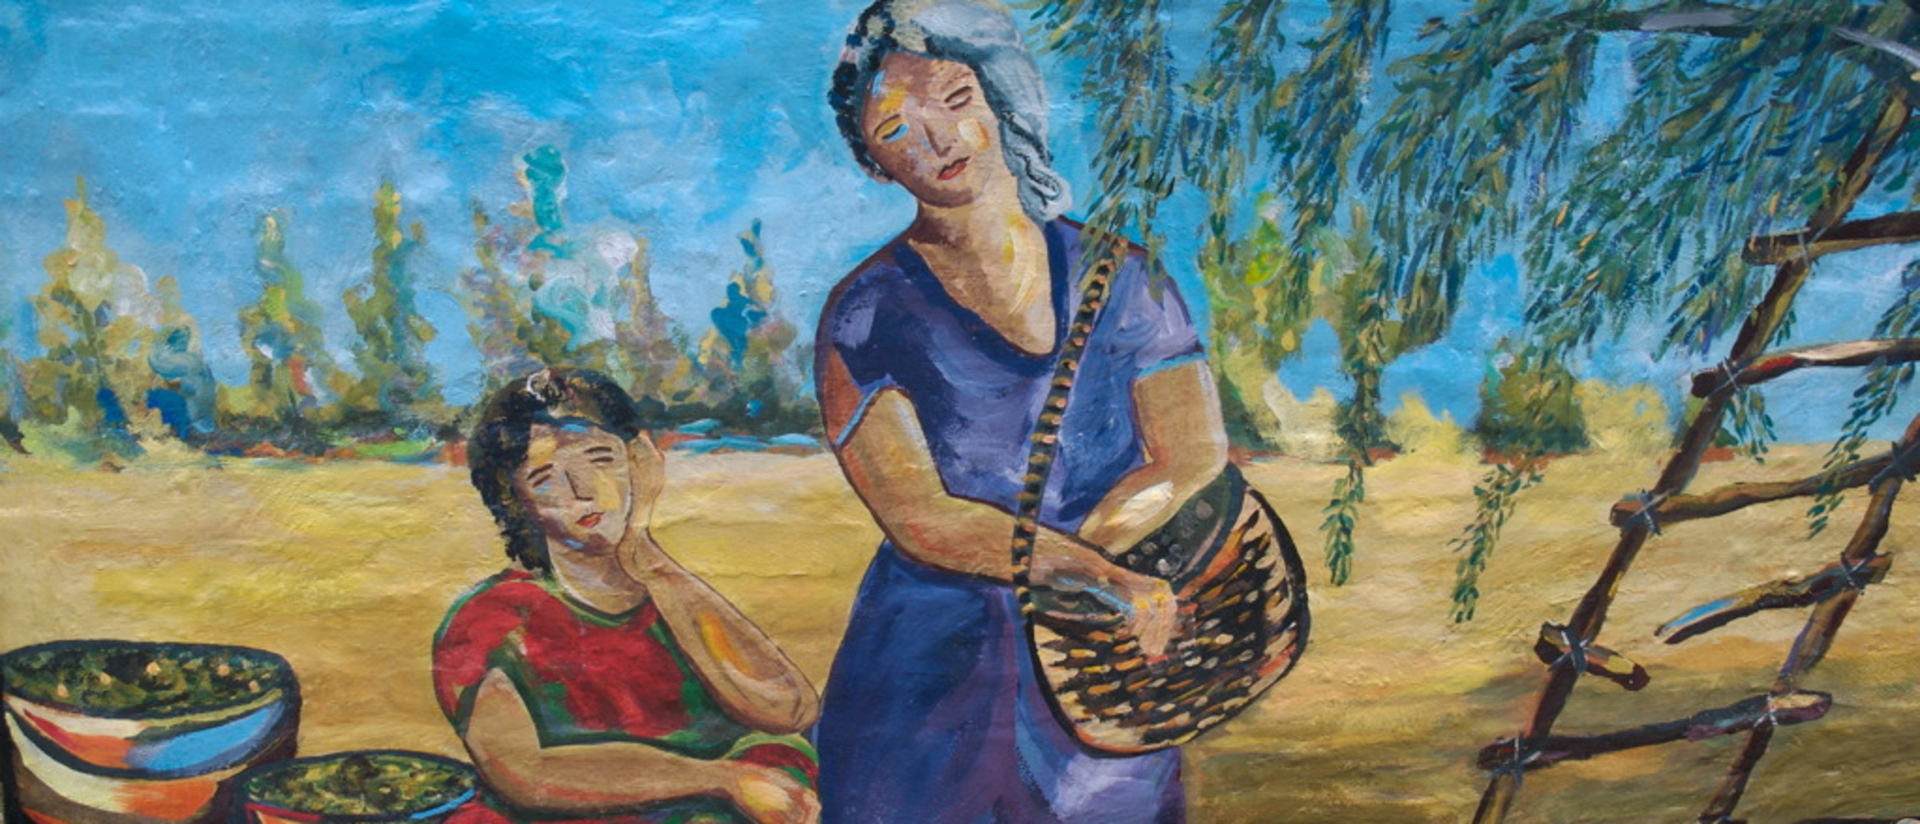 Mural art in Nicaragua